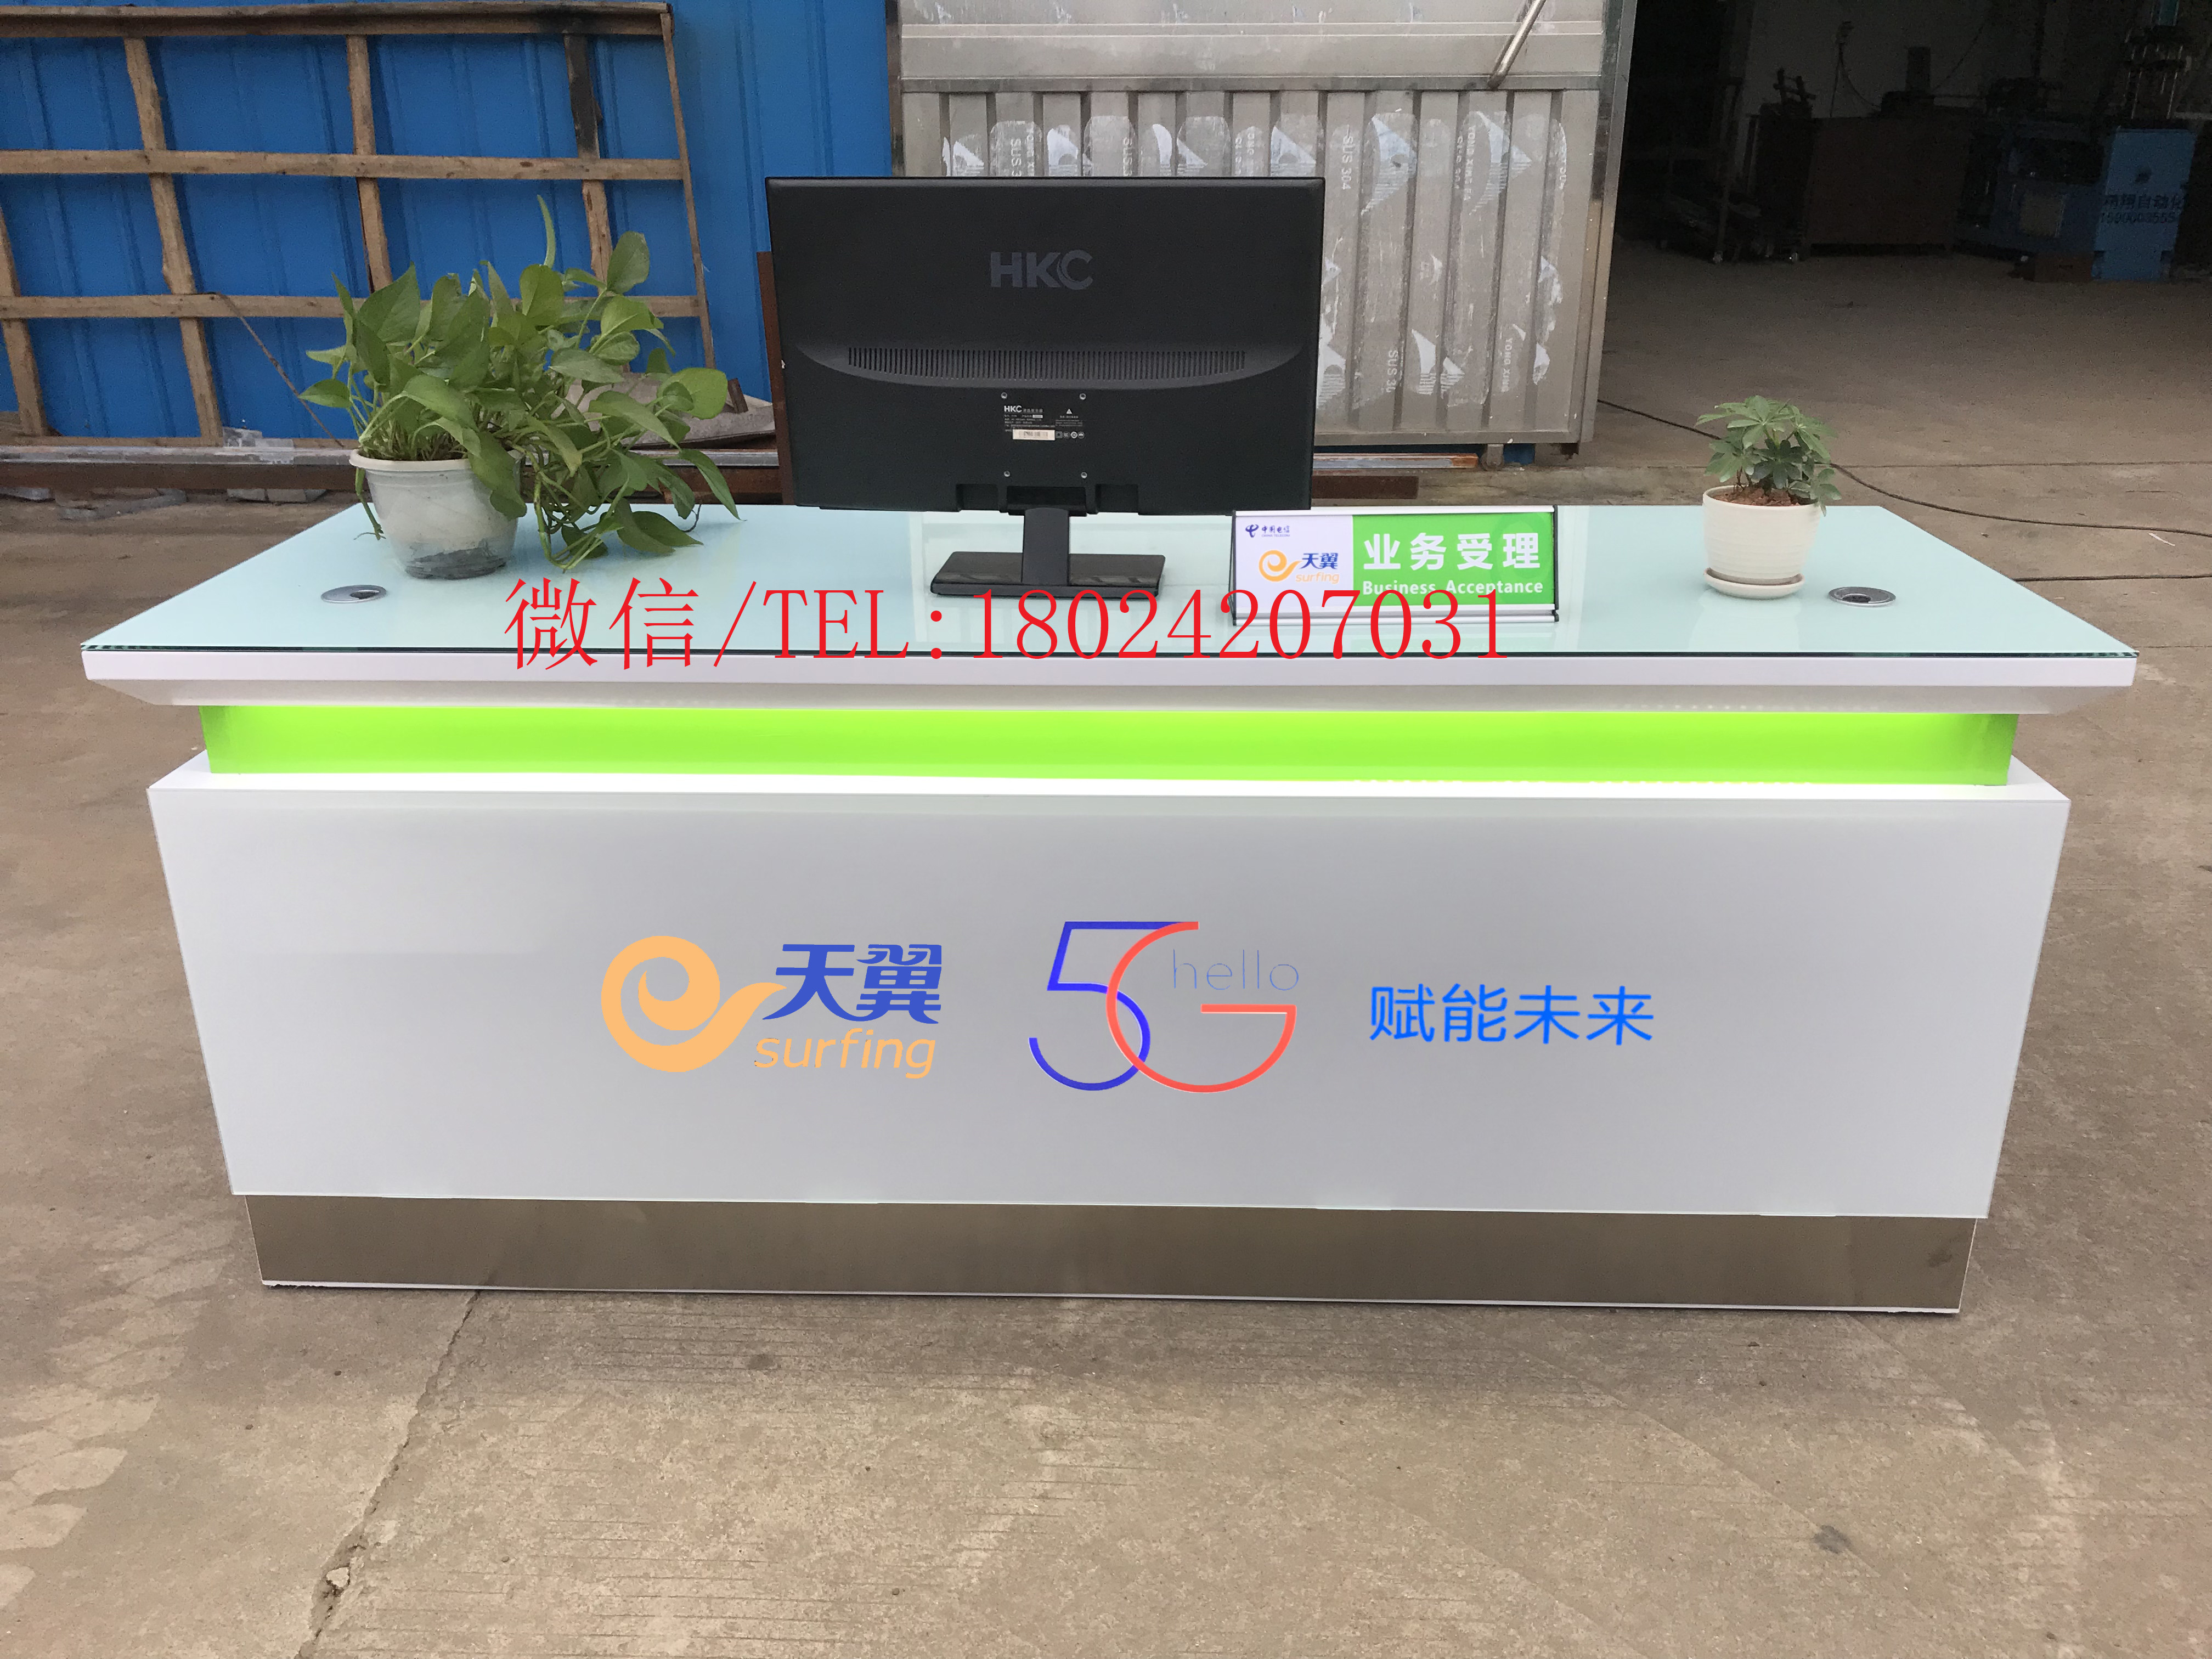 上海松江联通业务受理台收银台华为手机柜台摆设图片